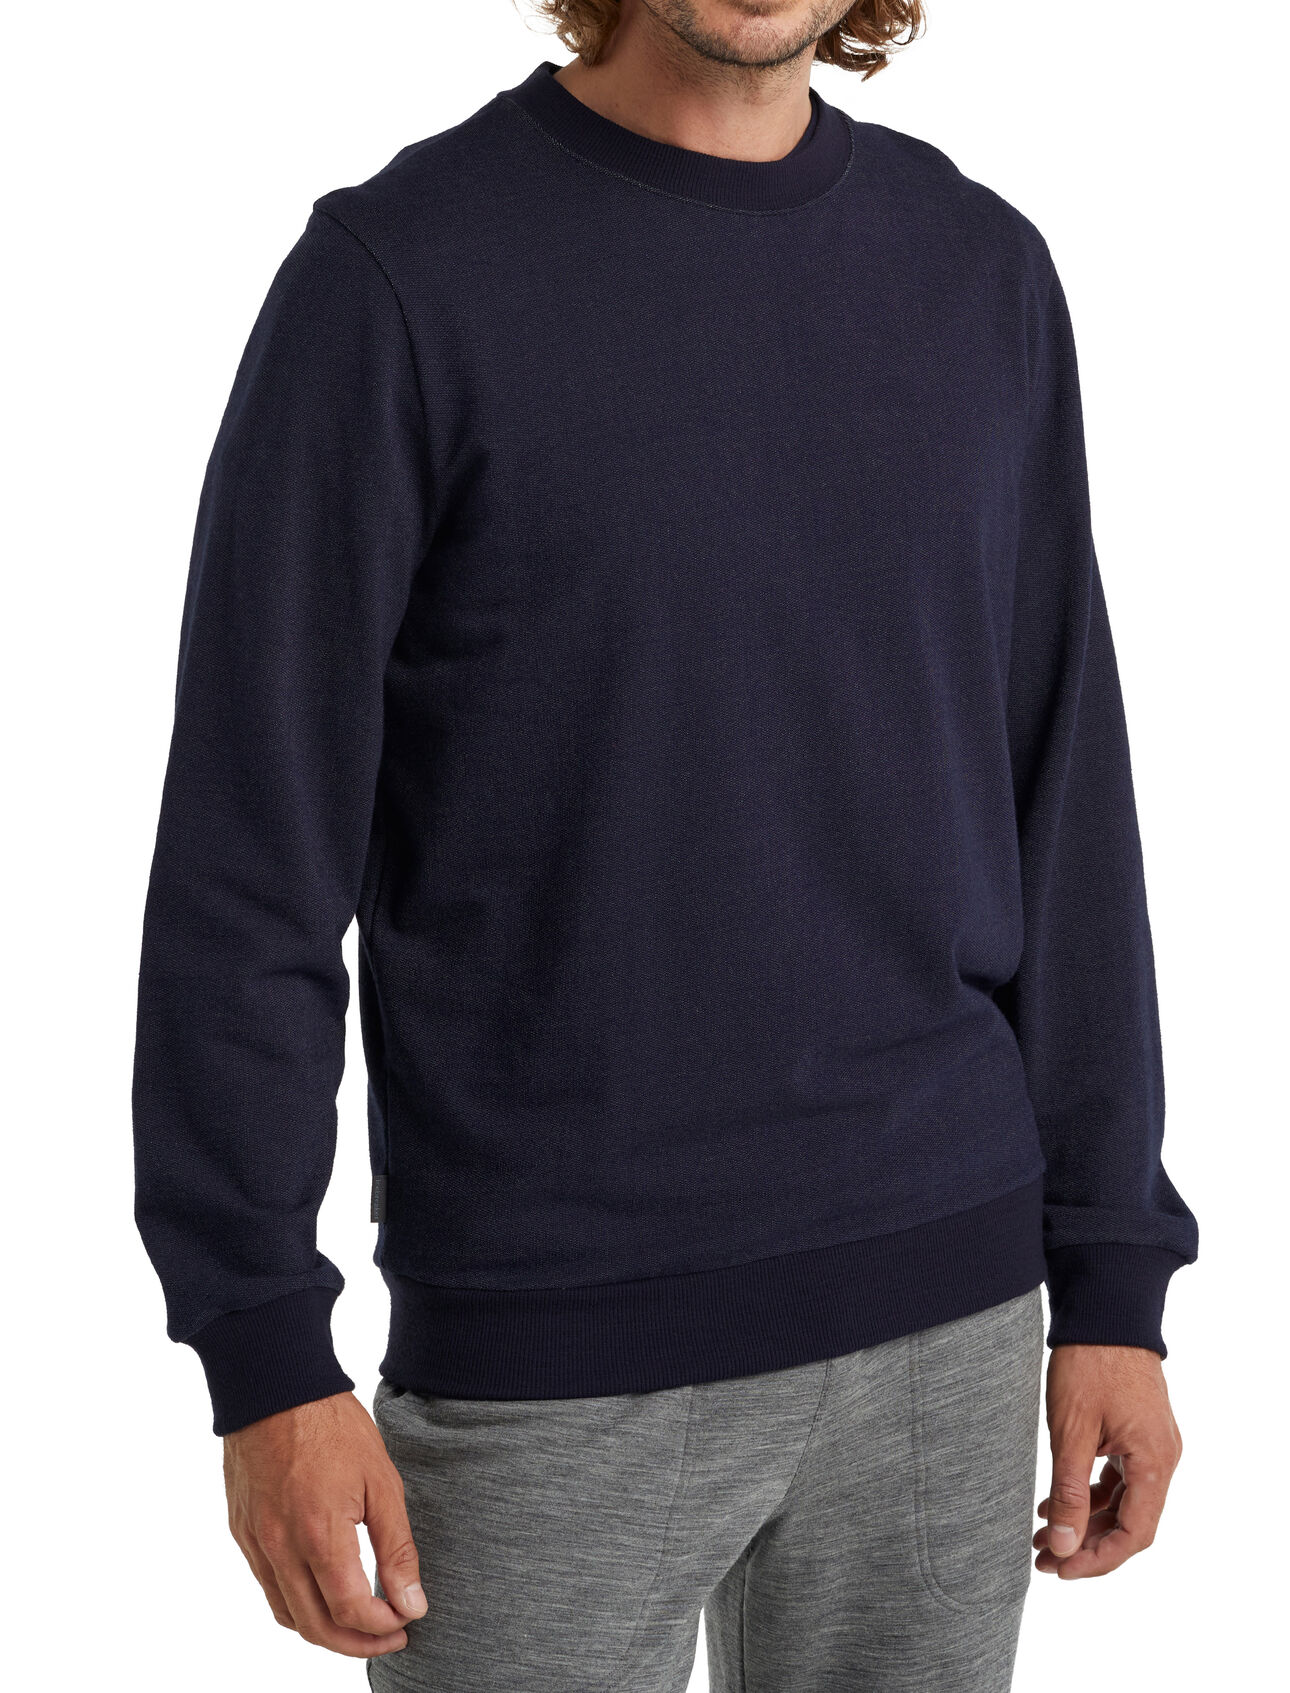 Central sweatshirt met lange mouwen van merinowol